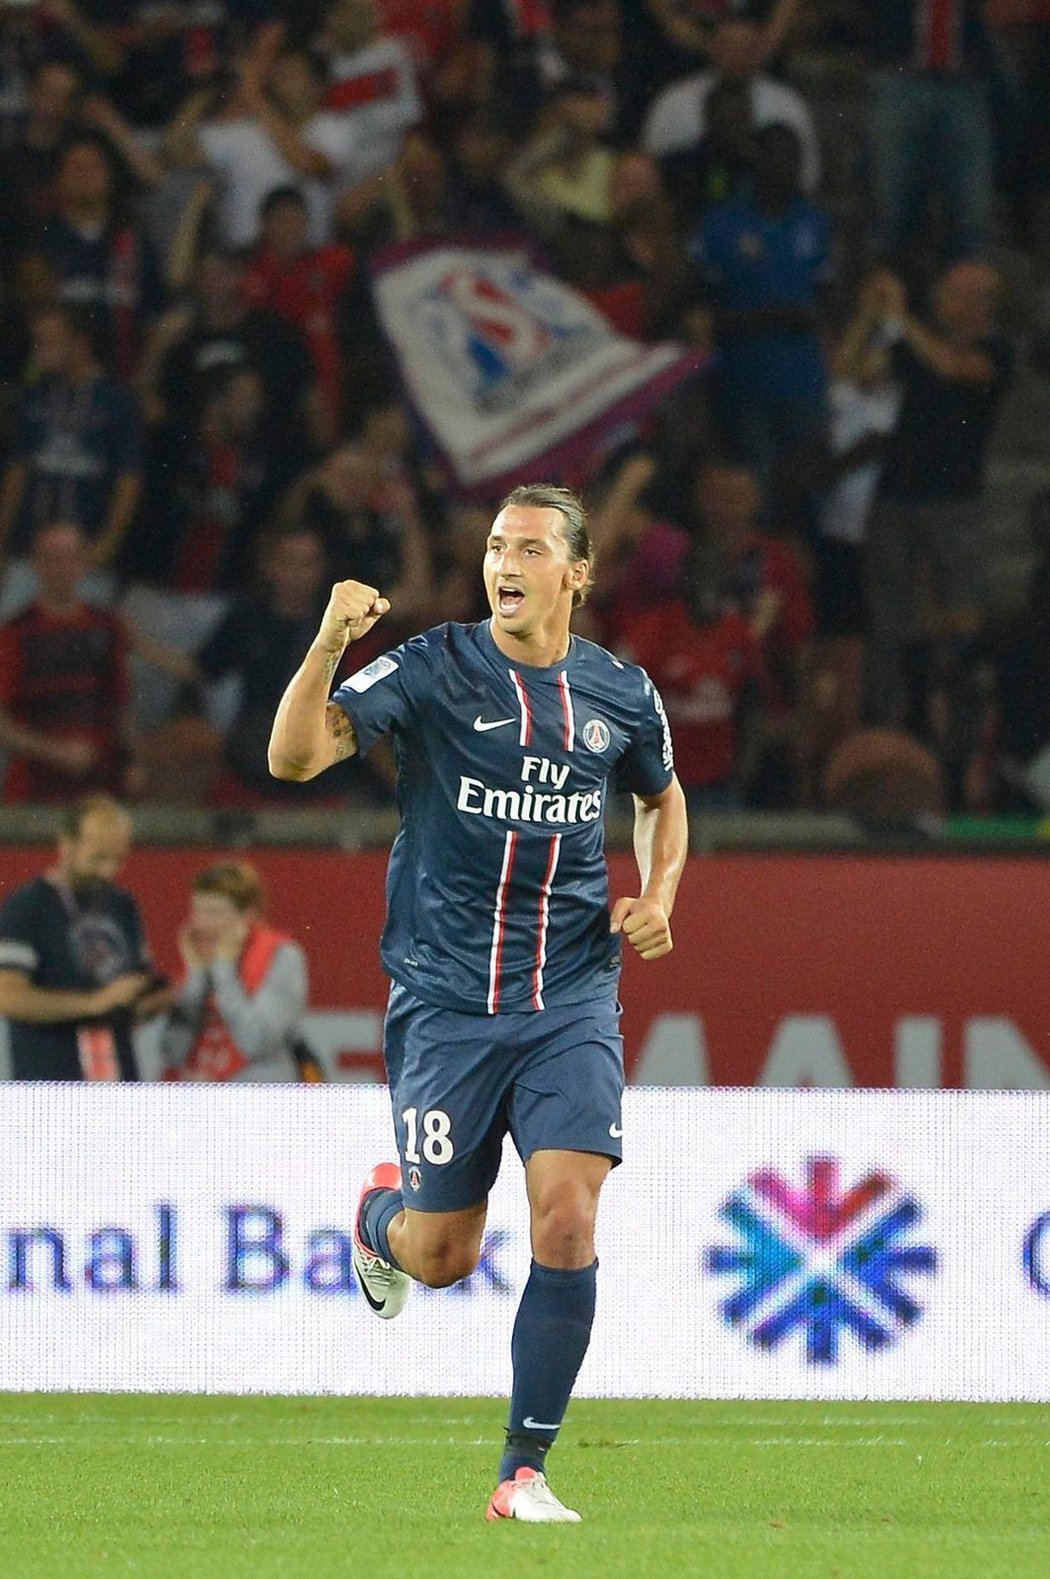 Švédský kanonýr Zlatan Ibrahimovic se po svém přestupu do Paris St. Germain stal nejlepším střelcem francouzské ligy